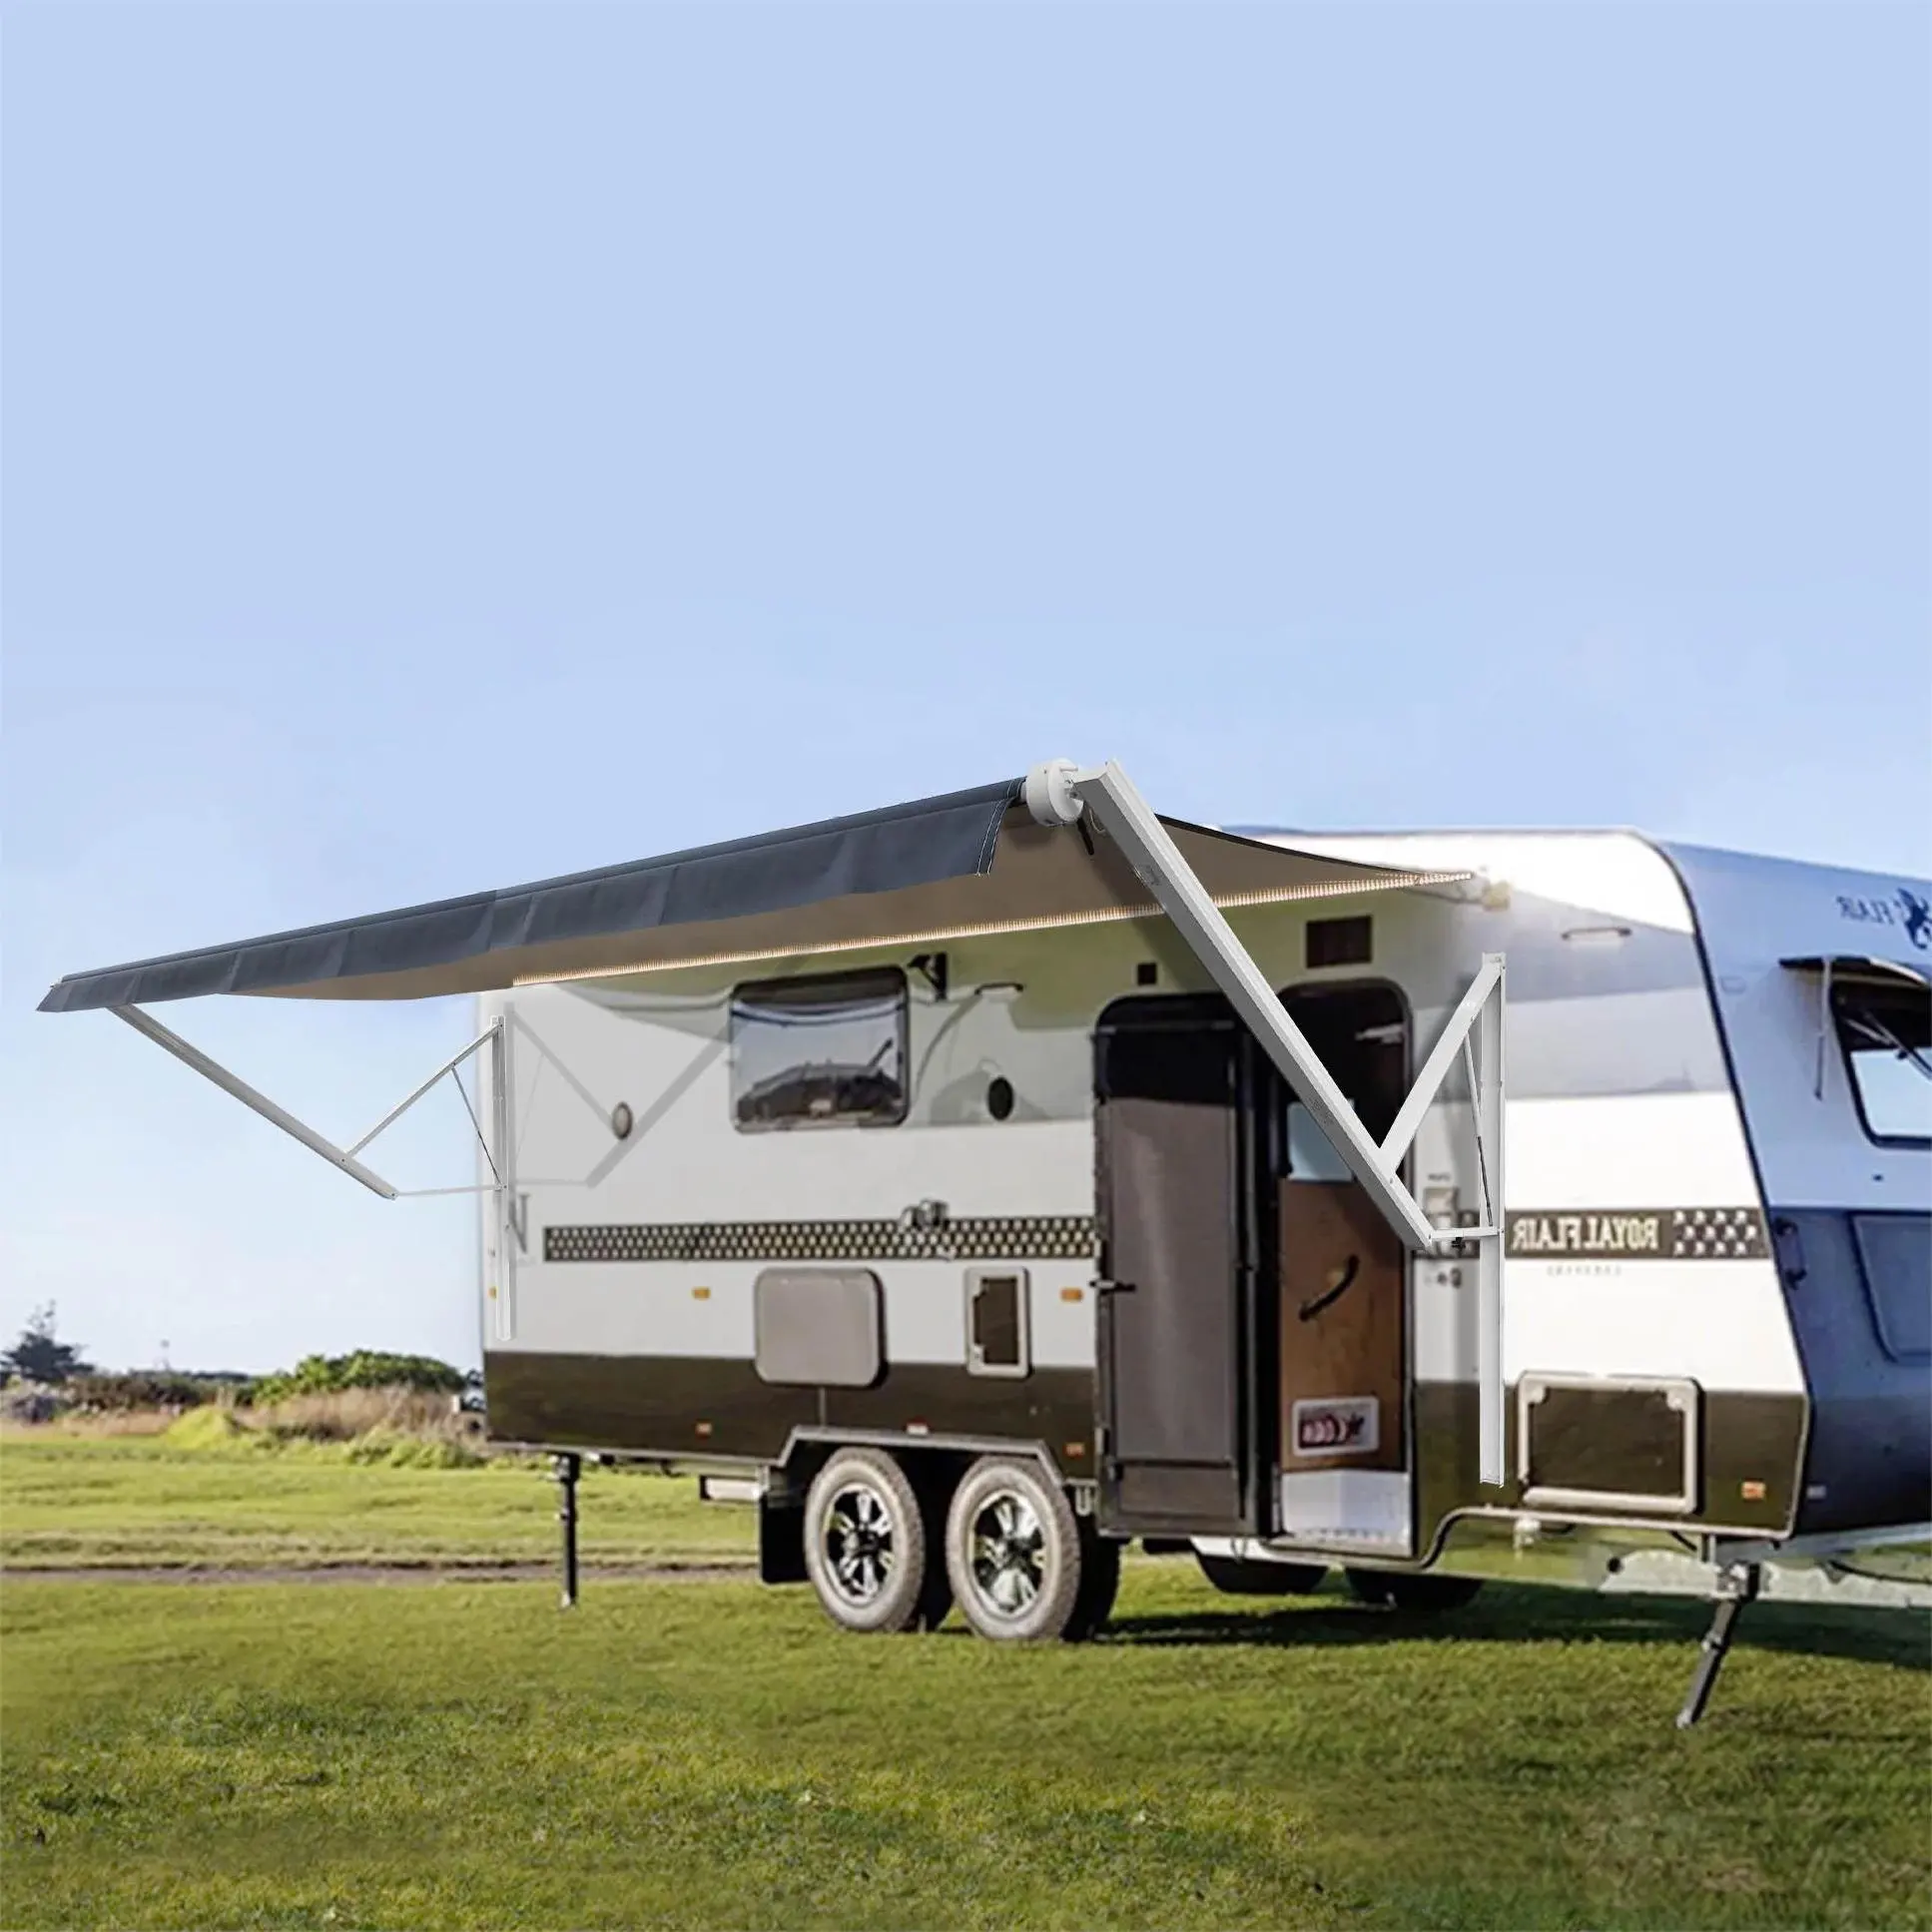 Wareda caravane de luxe camping auvent extérieur roll up retract rv camper van pour parking